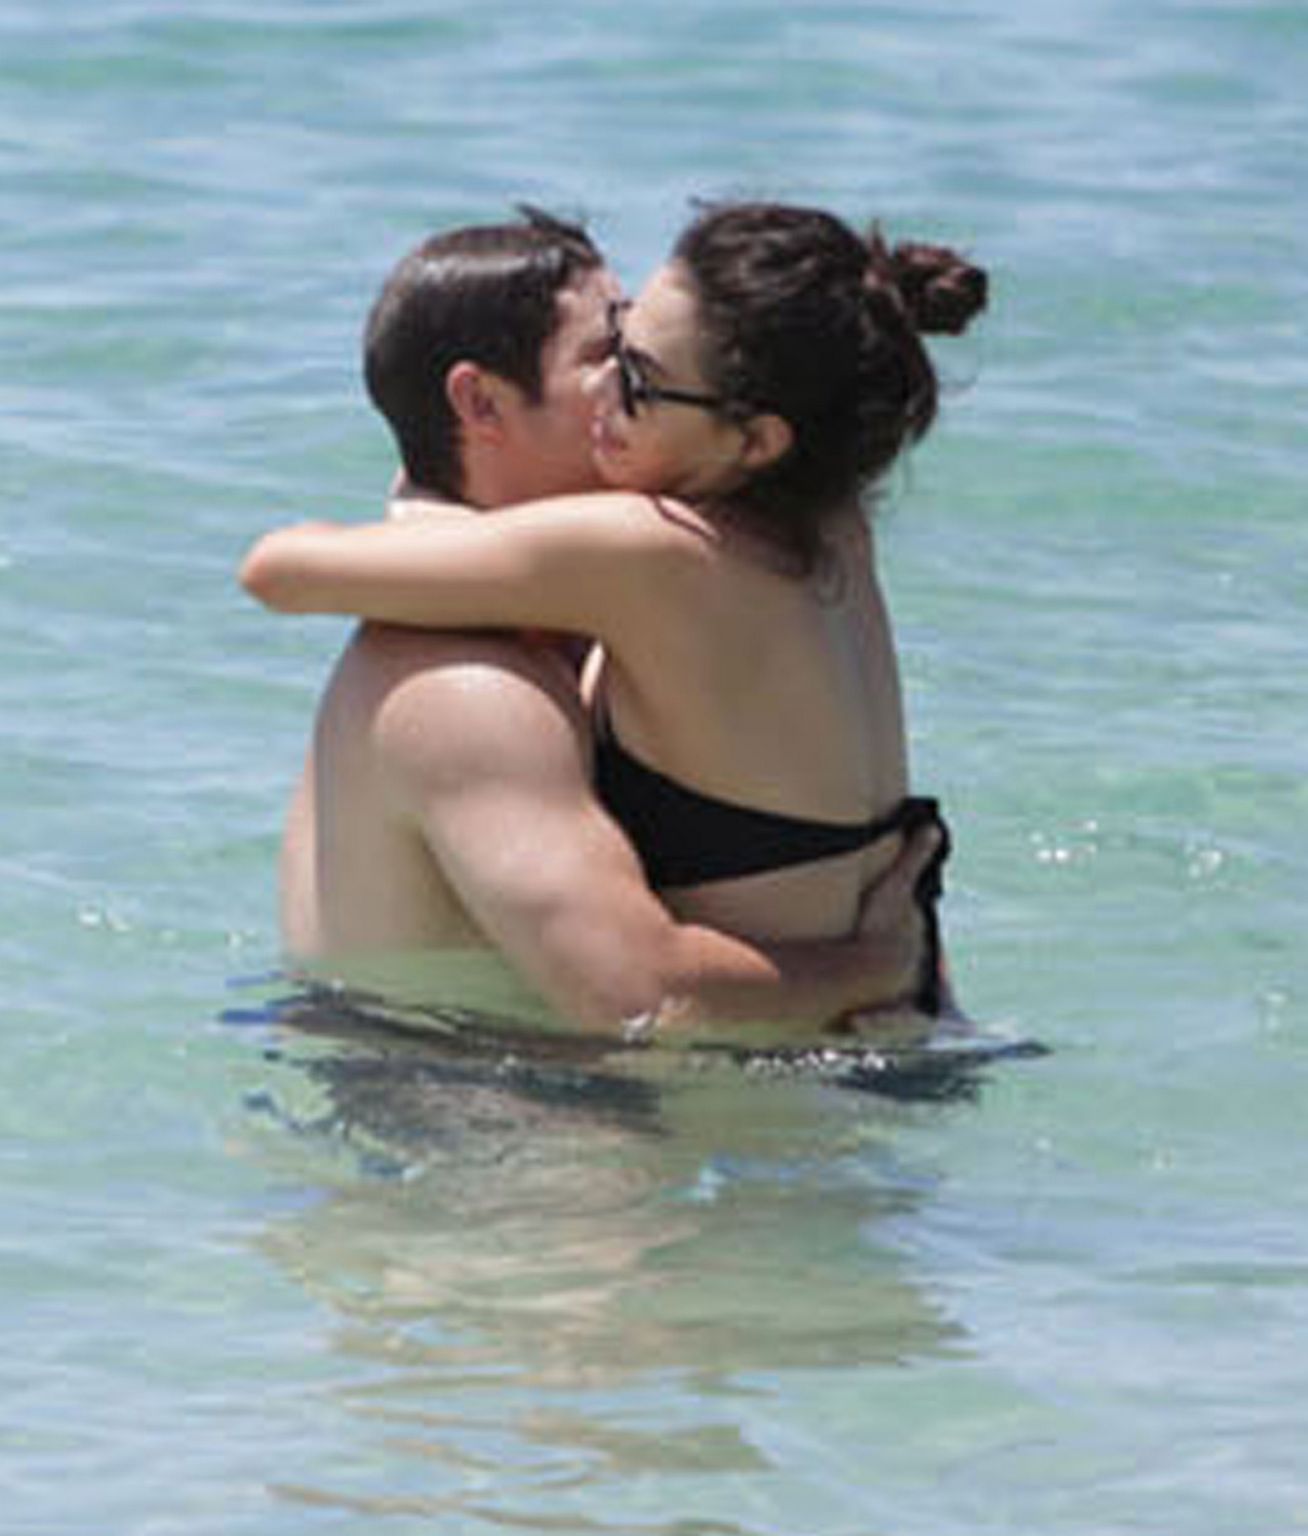 Adam DeVine and Chloe Bridges Enjoy A Day On The Beach